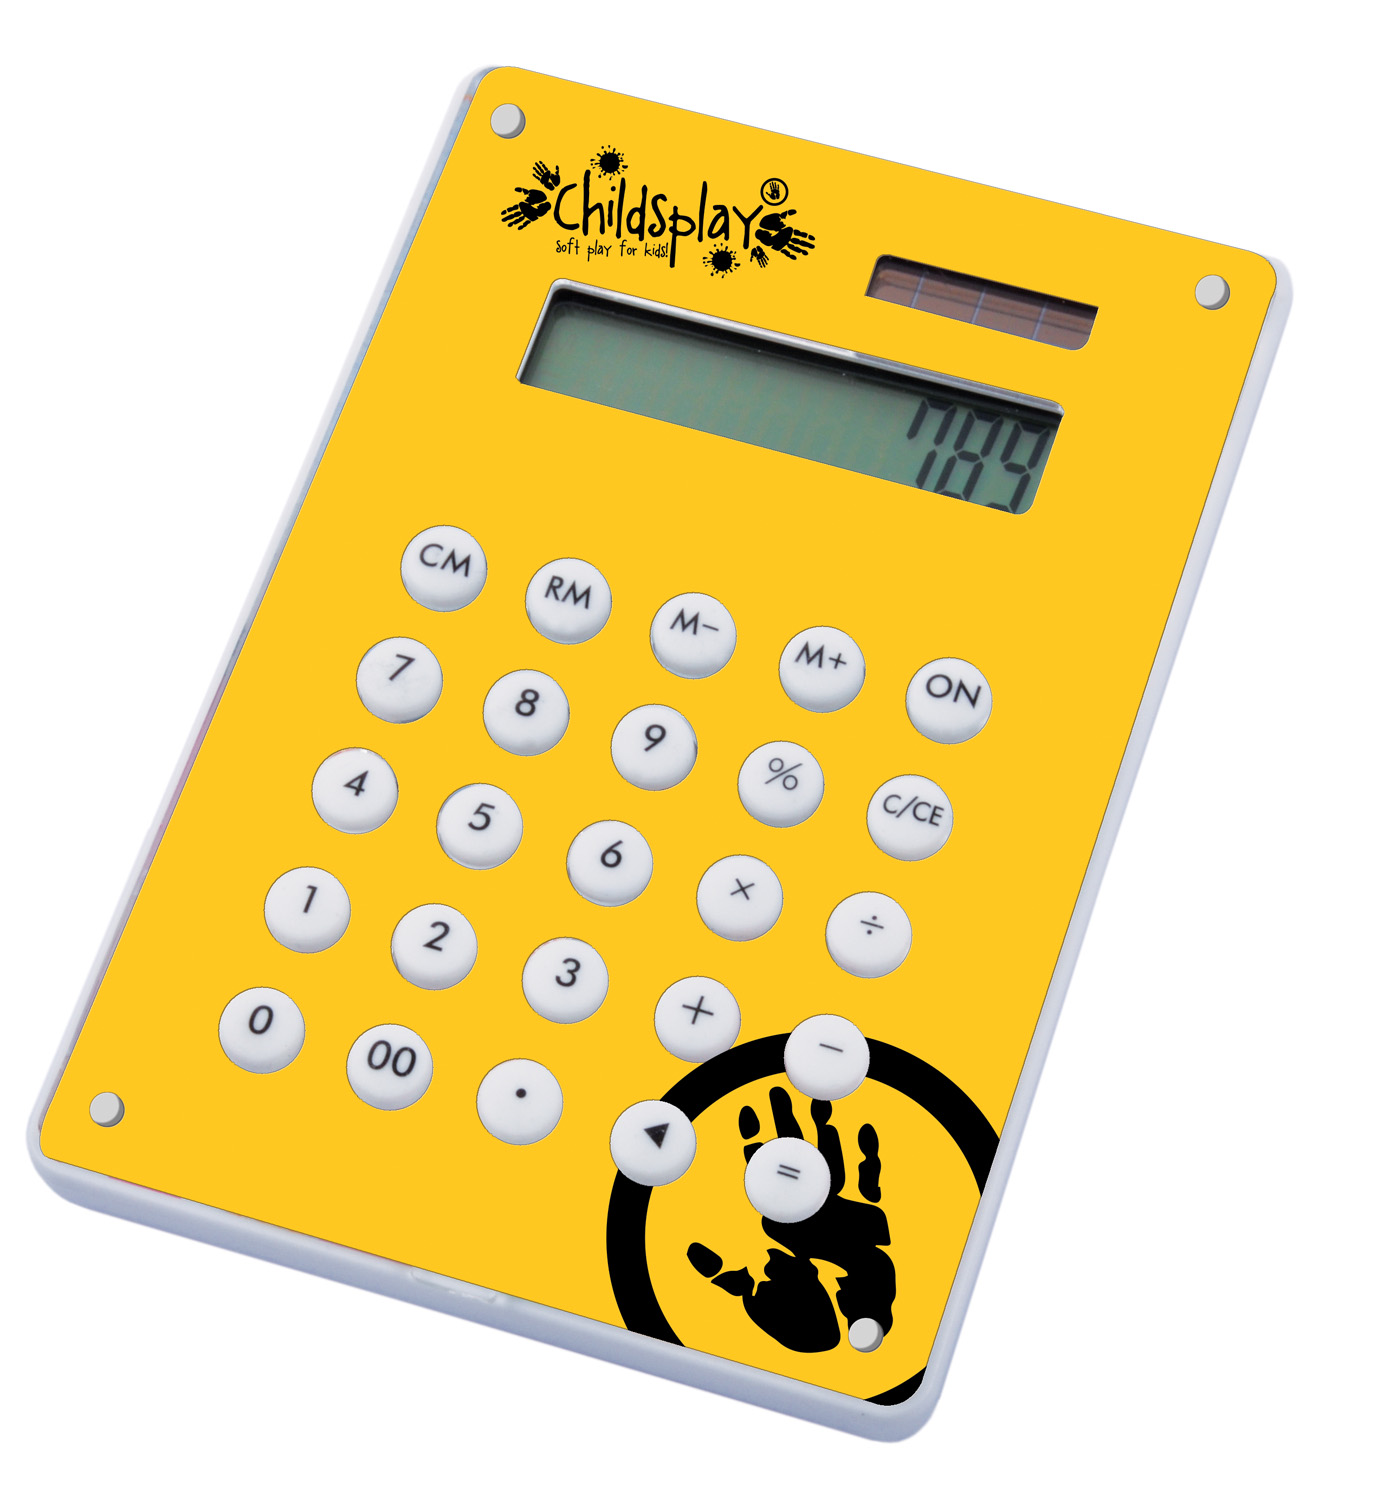 Corporate Image Calculator